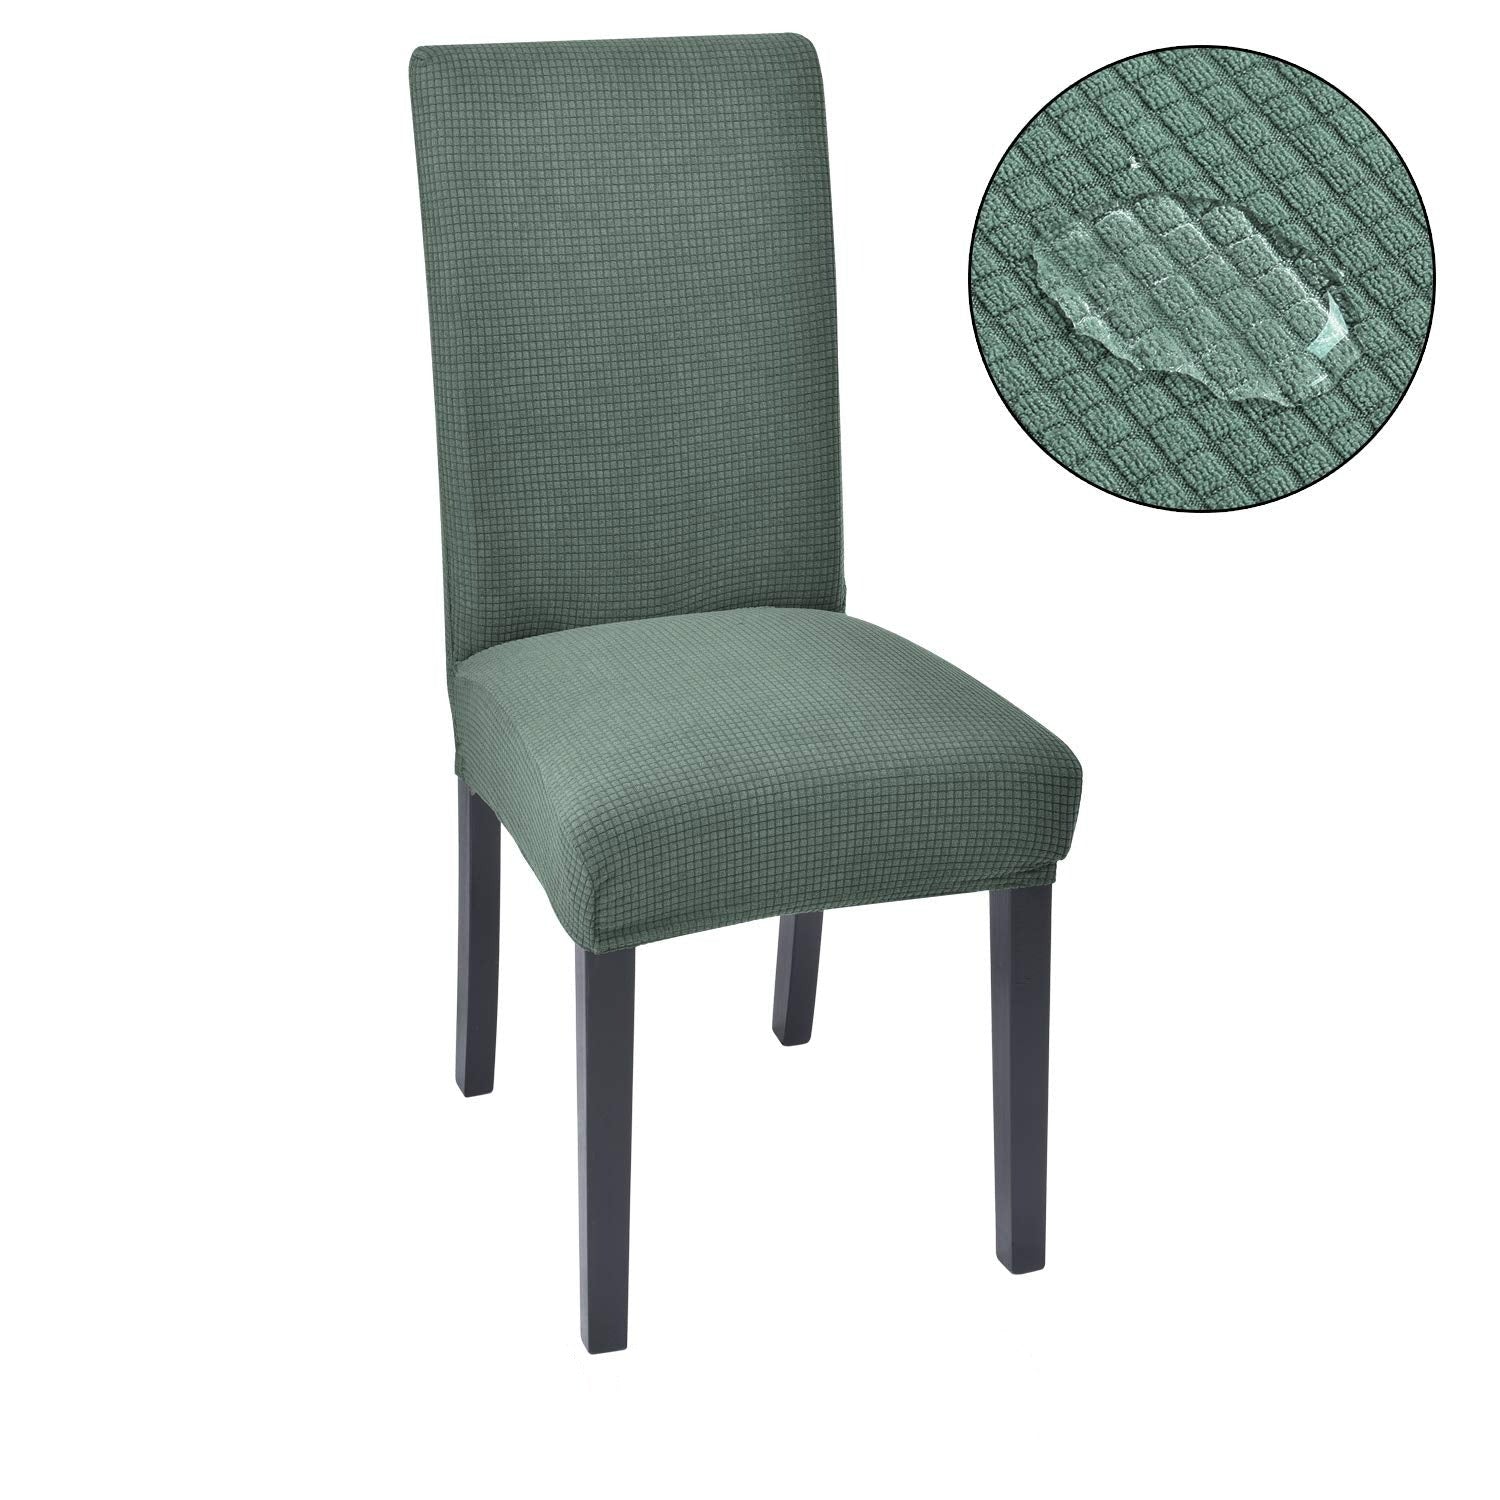 StuhlCover ™ - Verleihen Sie Ihren Stühlen einen neuen Look